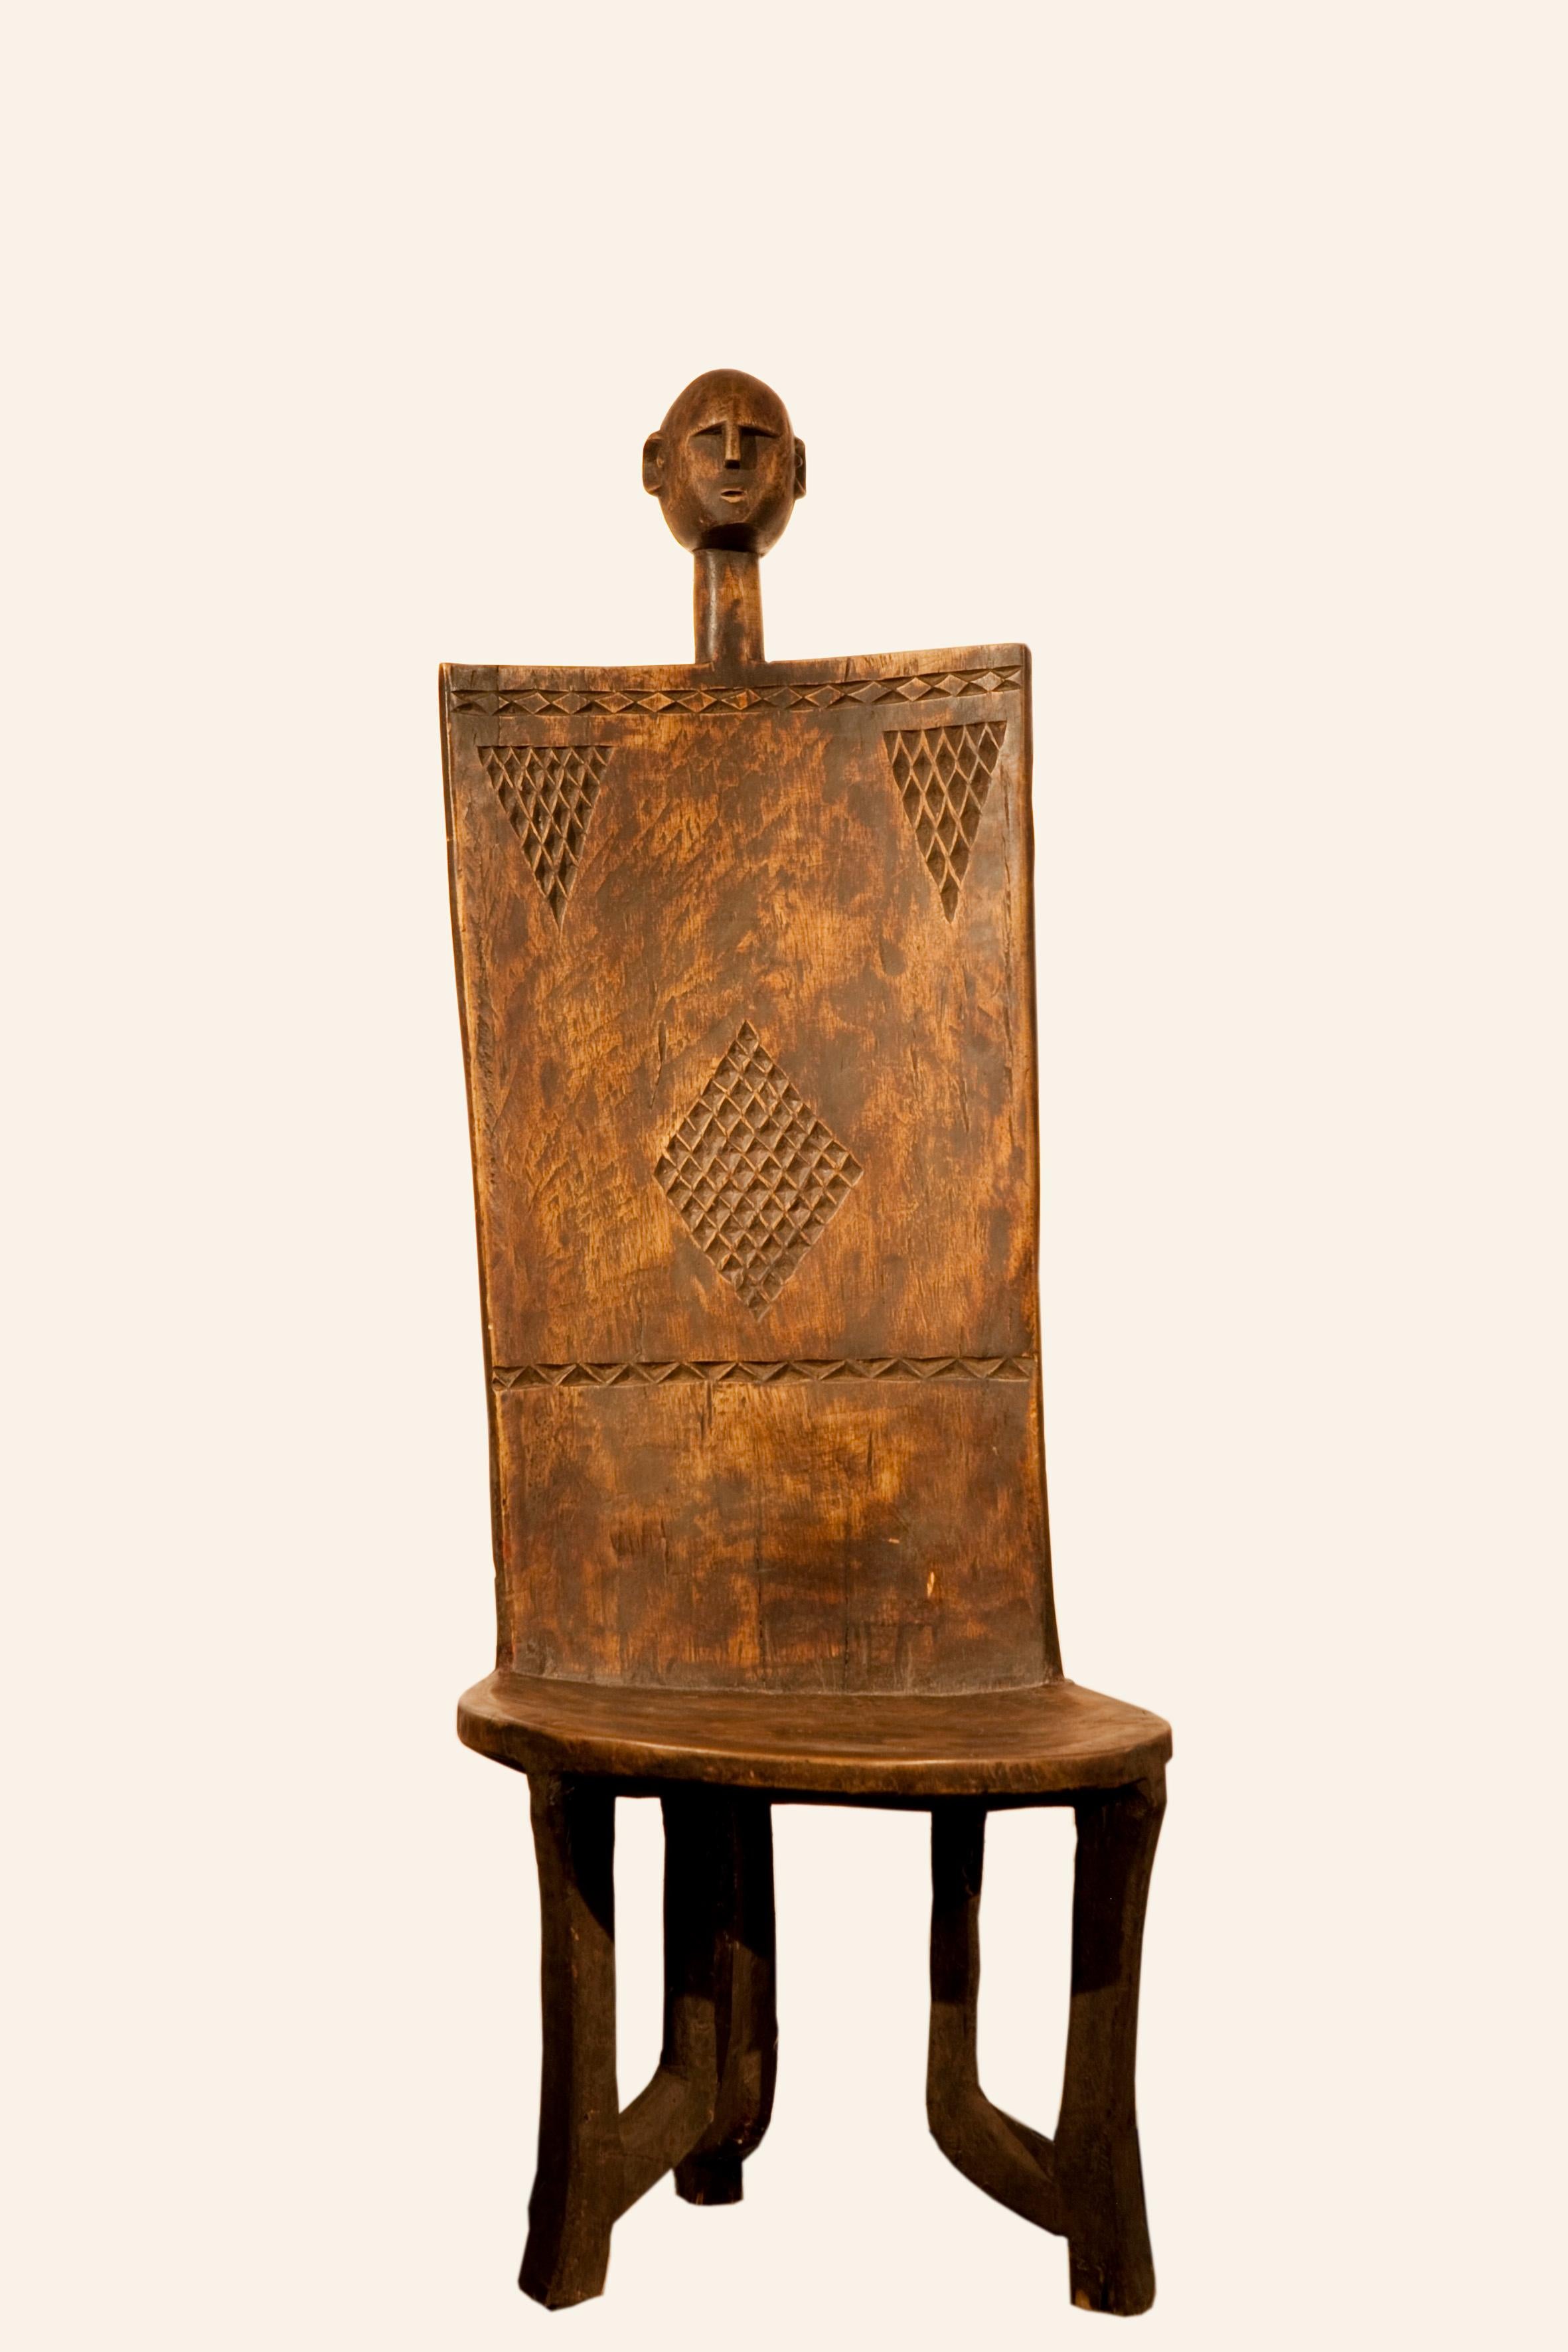 Chaises en bois

année : 1940
La qualité des chaises et le bois exotique utilisé les rendent uniques. Il s'agit d'une icône de distinction.
Hehe
Sculpter un élégant tabouret à pieds, sont considérés comme des objets du quotidien. Les tabourets sont